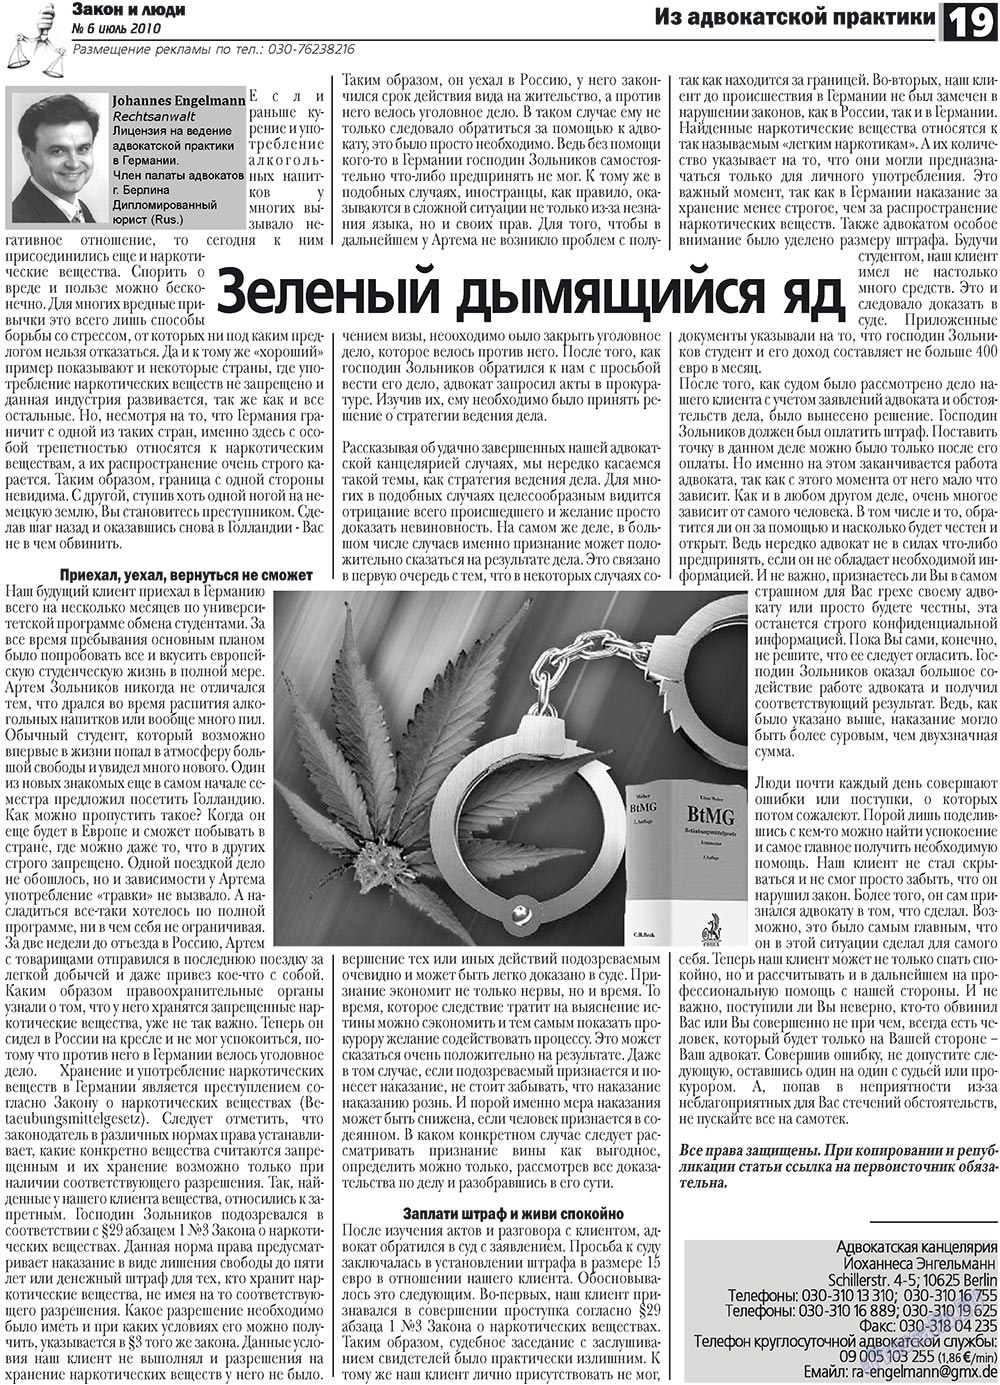 Закон и люди (газета). 2010 год, номер 6, стр. 19